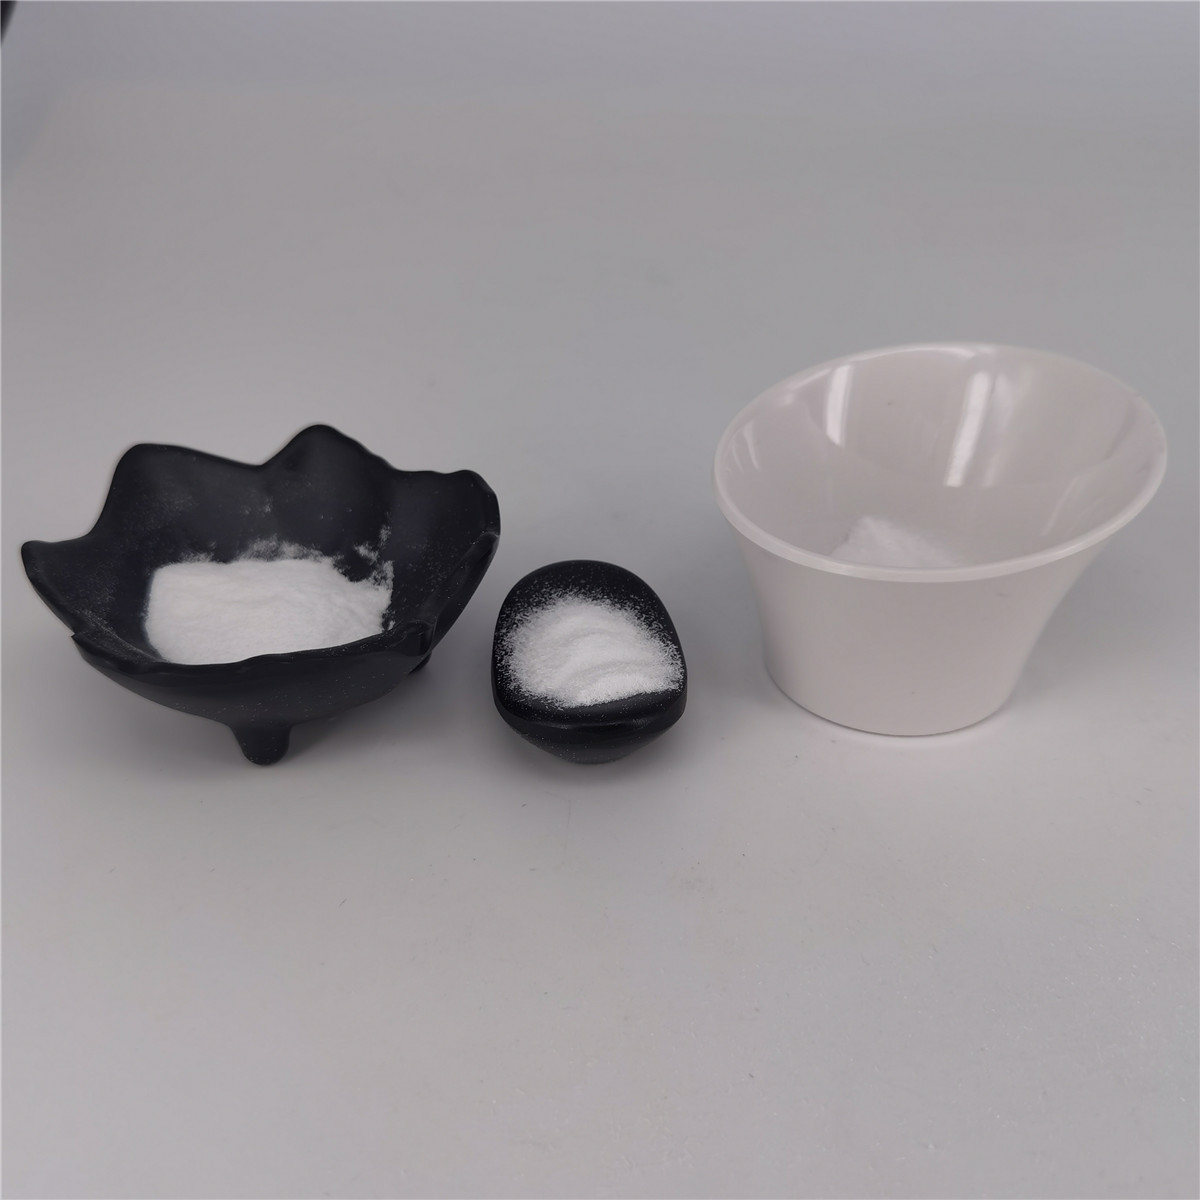 Buy cheap Whitening Materials White Powder Beta Arbutin CAS 497 76 7 from wholesalers